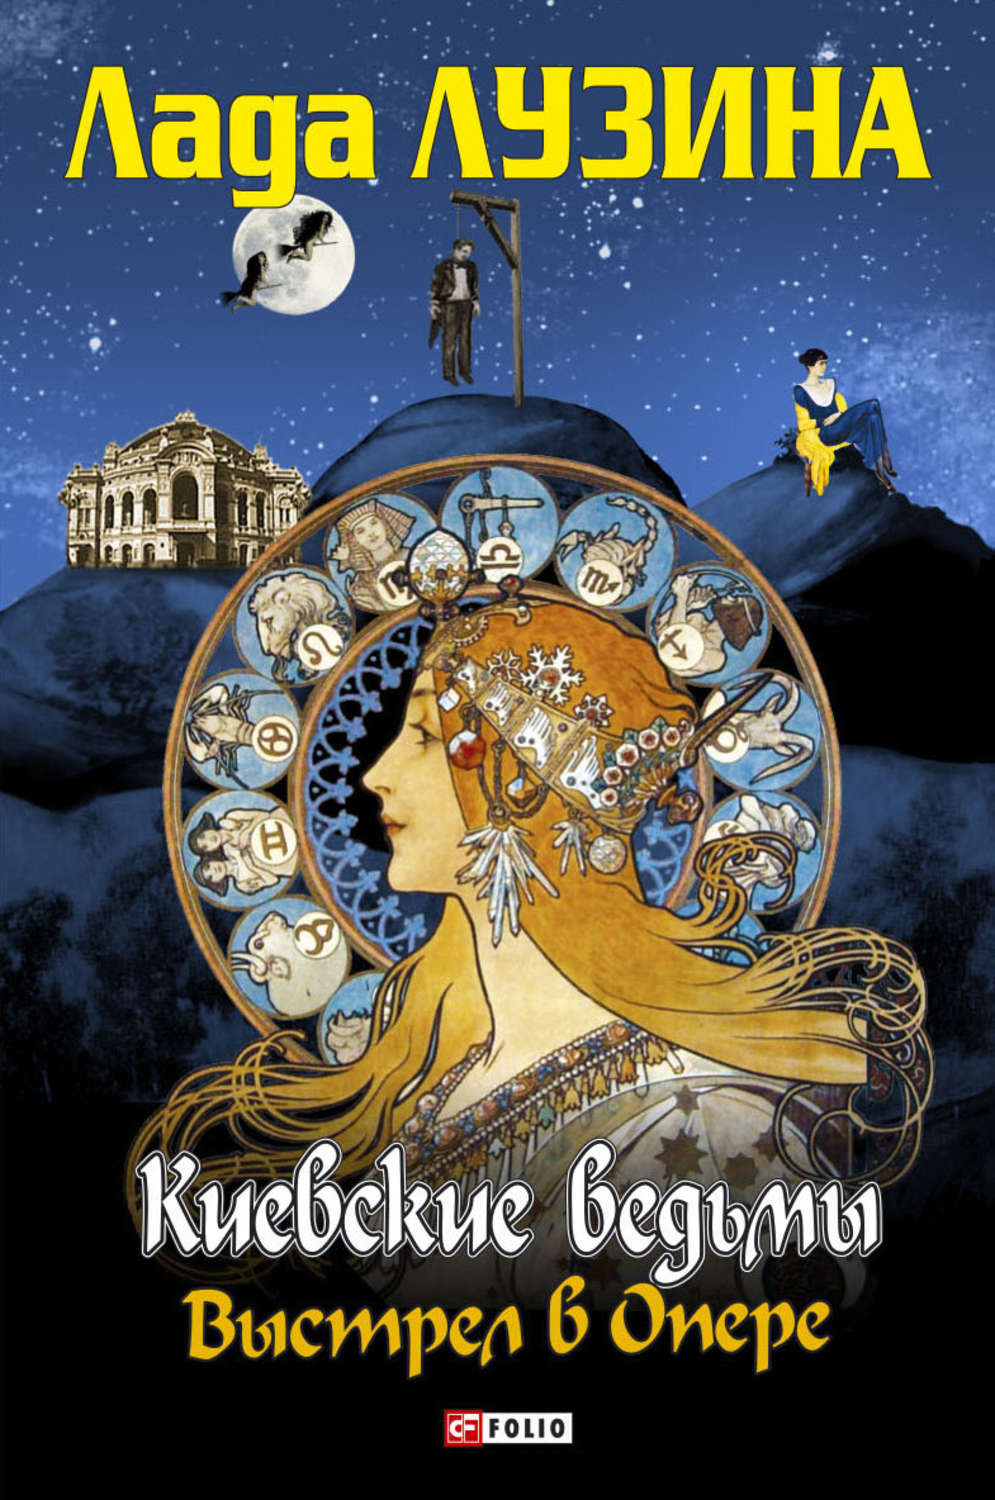 Скачать бесплатно книгу киевские ведьмы